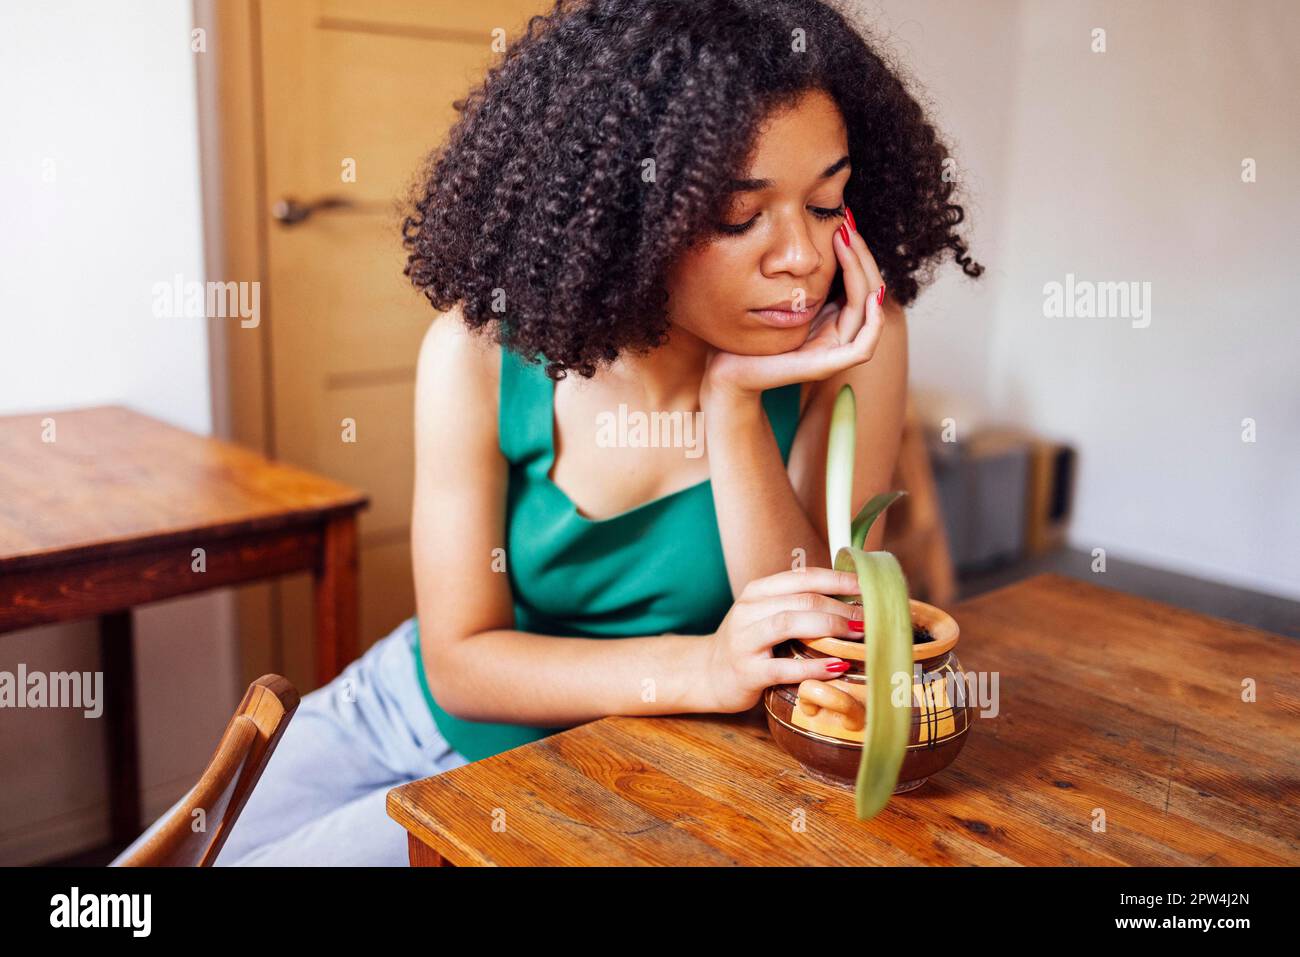 Junge traurige Frau afroamerikanischer ethnischer Herkunft trägt ein grünes T-Shirt, das den Baum im Wohnzimmer hält Stockfoto